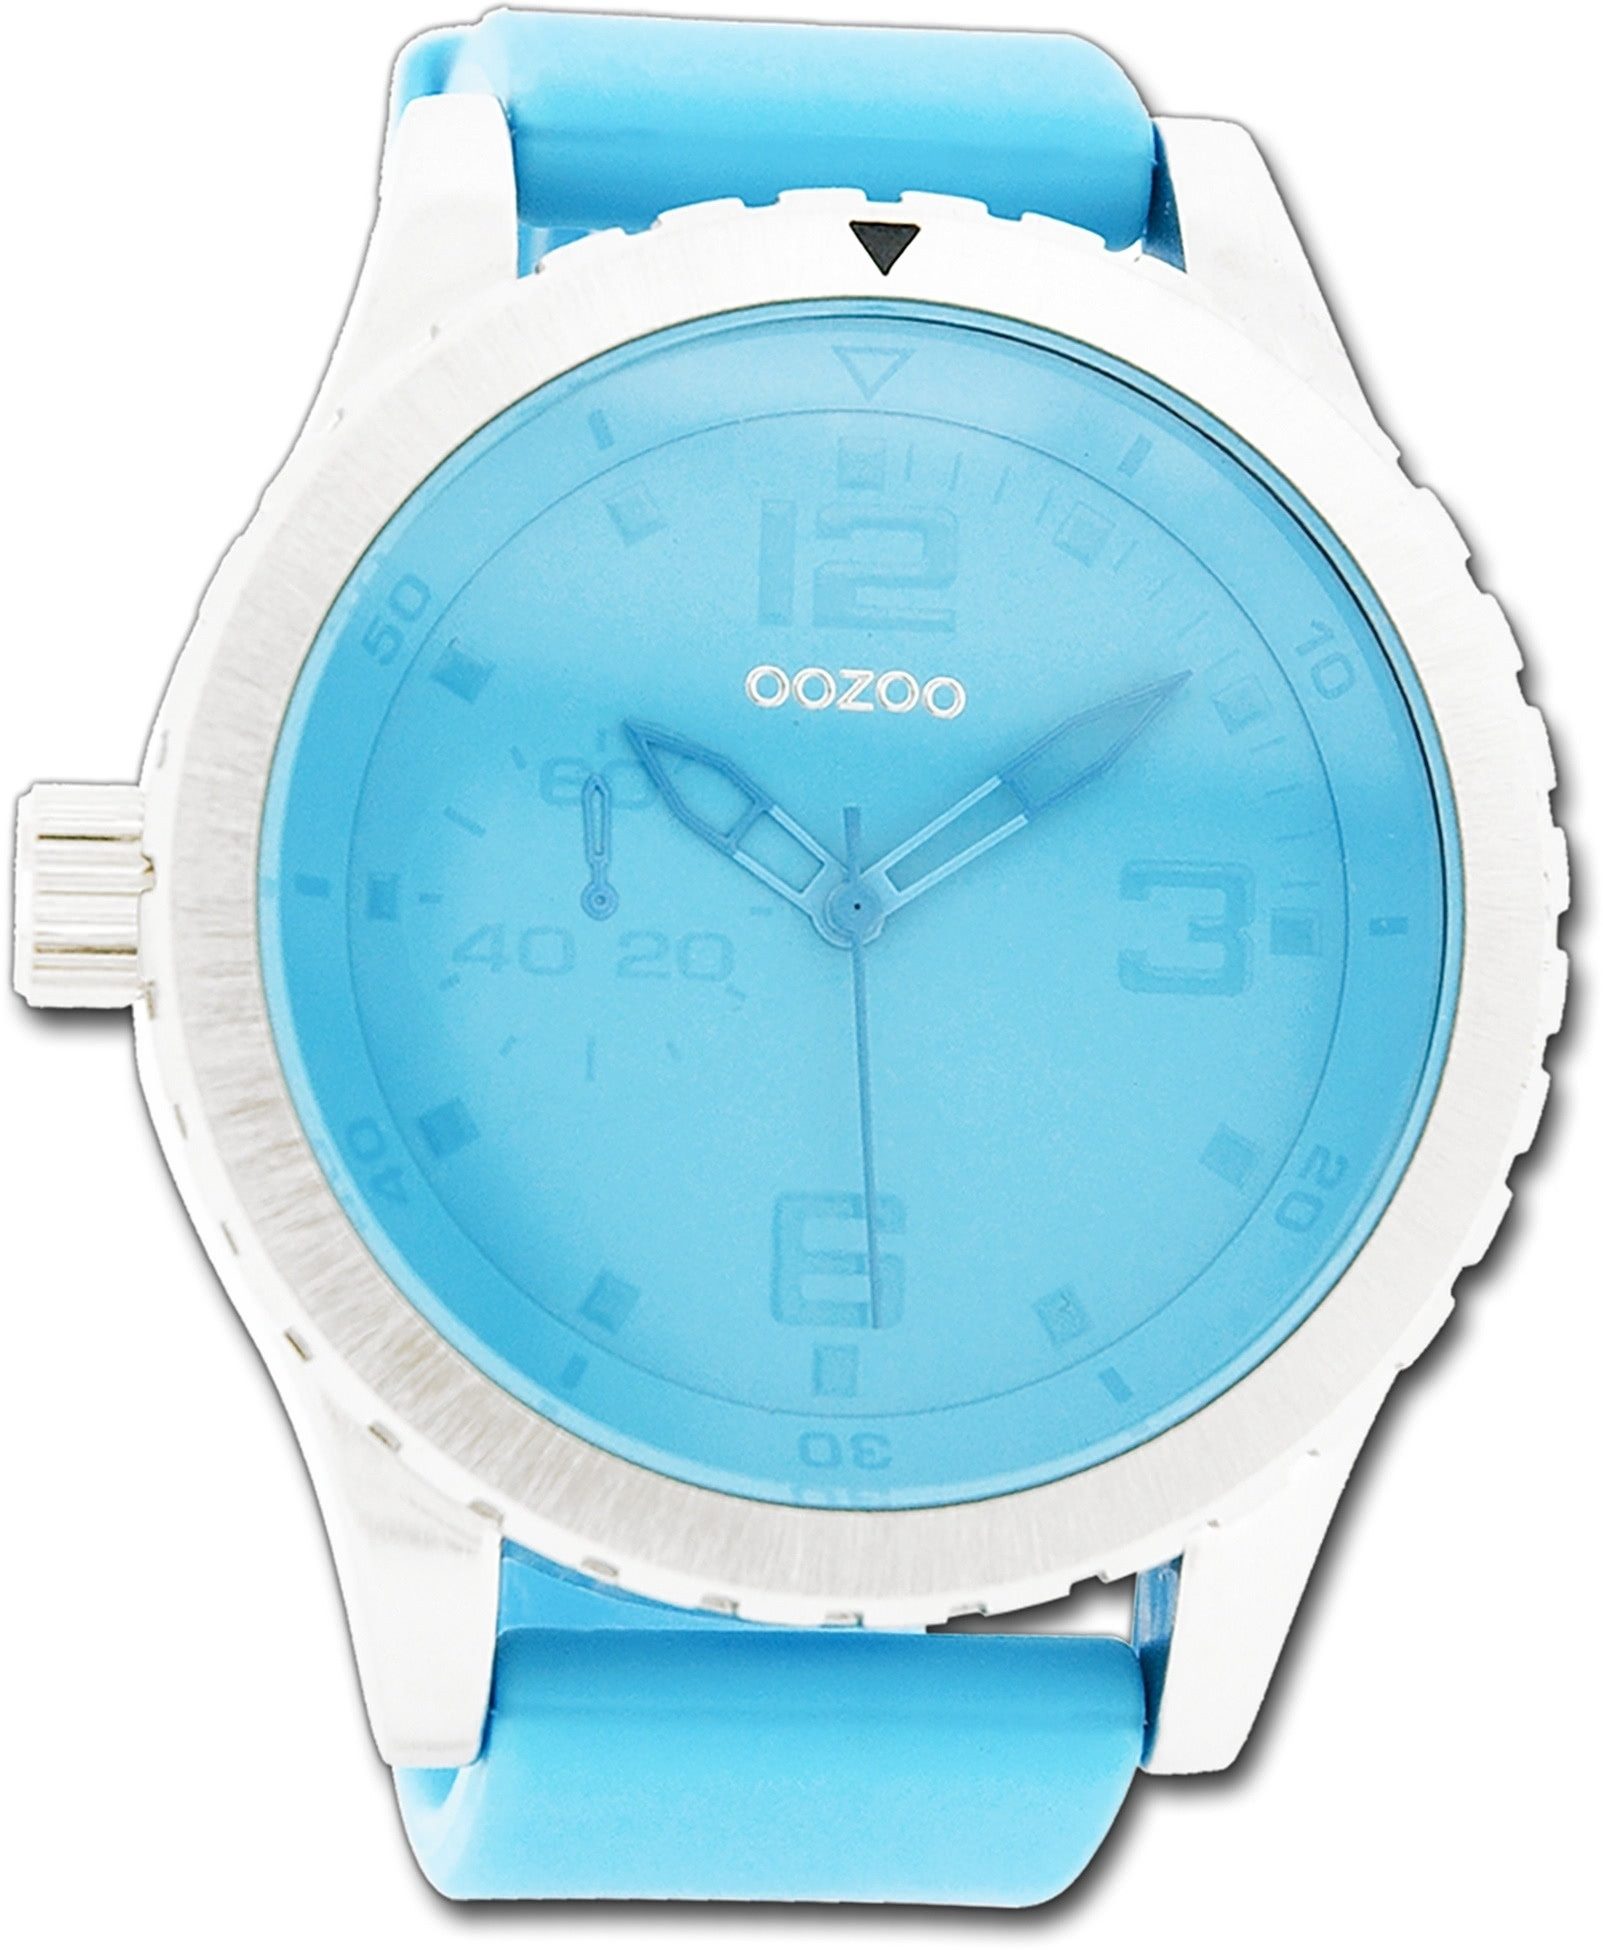 OOZOO Quarzuhr Oozoo Unisex Armbanduhr Vintage Series, (Analoguhr), Unisexuhr Lederarmband blau, rundes Gehäuse, extra groß (ca. 51mm)